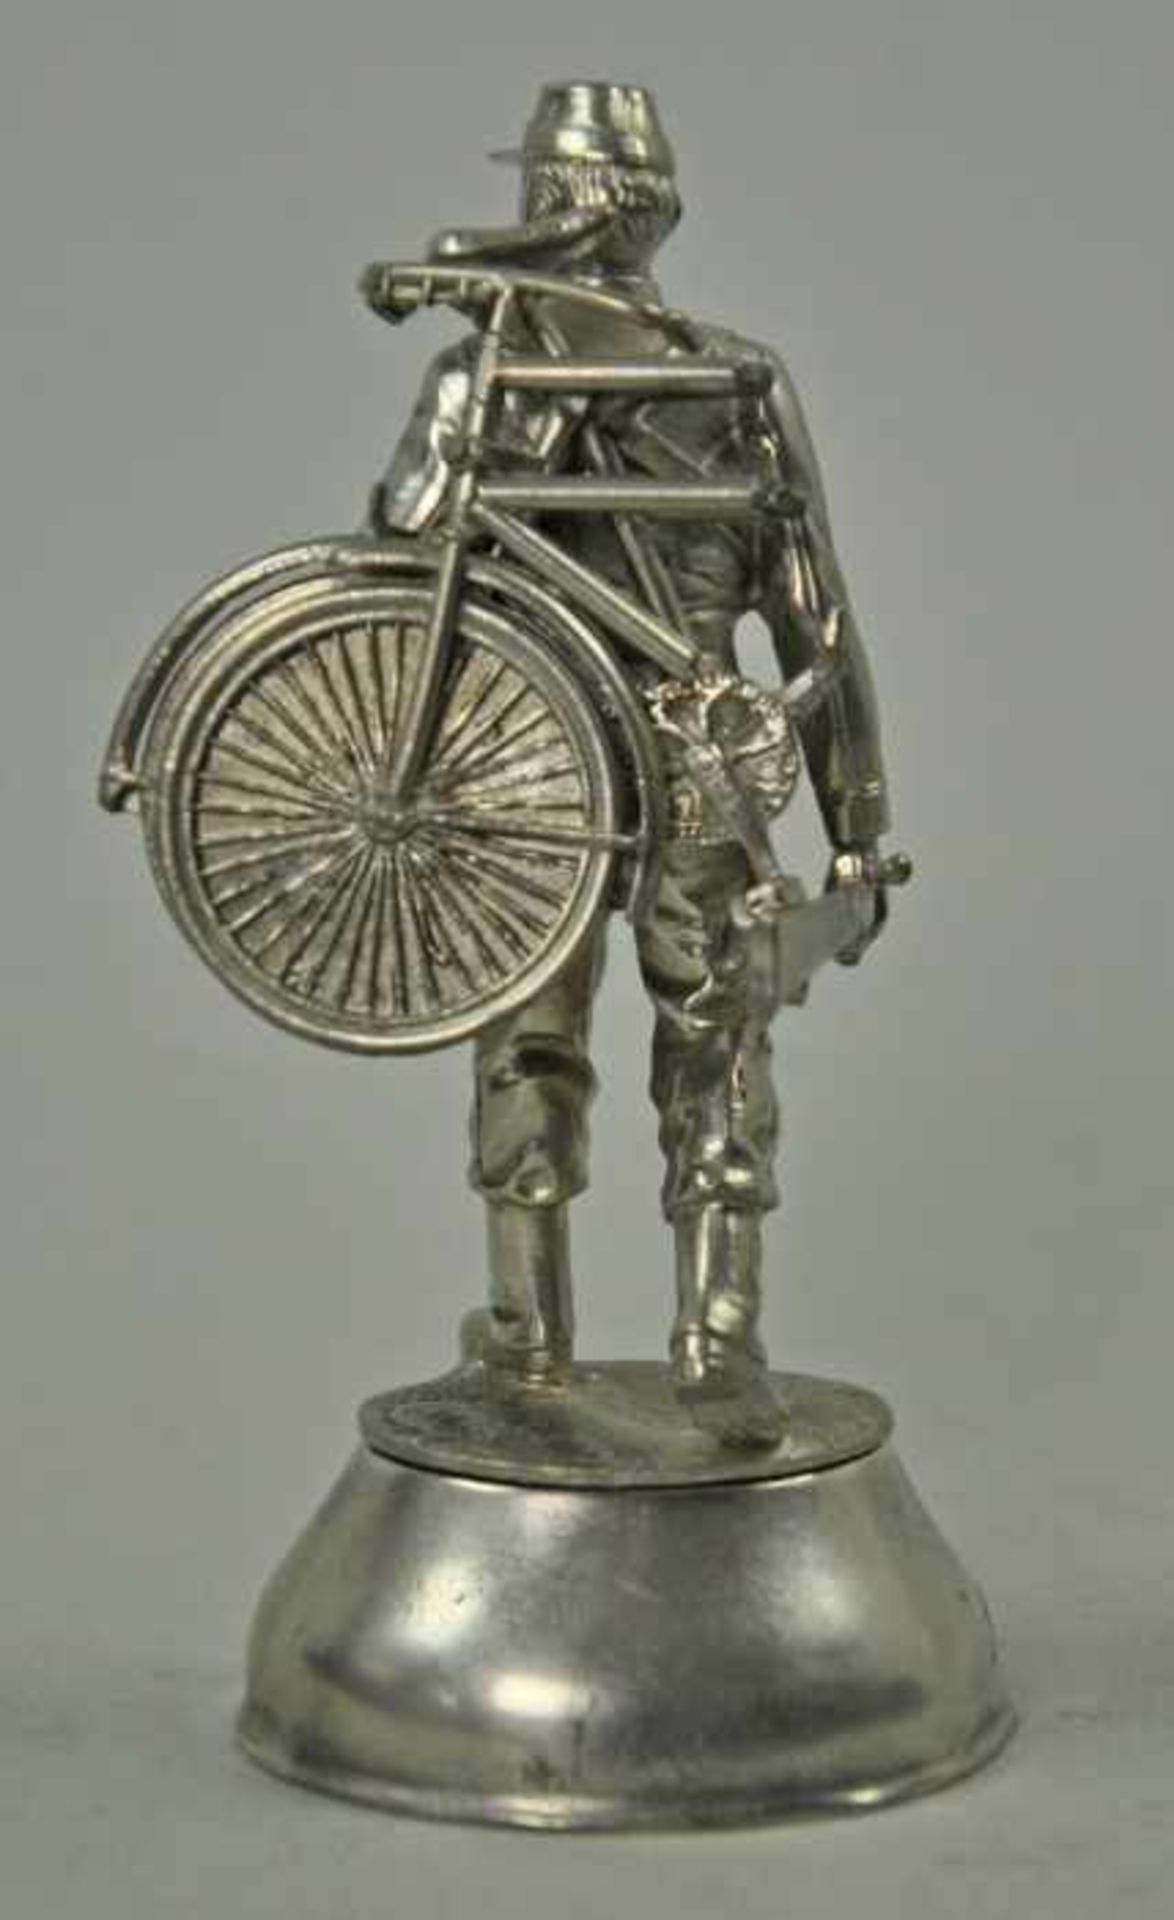 BELGISCHER SOLDAT auf dem Rücken ein Fahrrad, bez. unter der Basis "Belg Cyclist", Zinn, H 11cm - Image 2 of 4